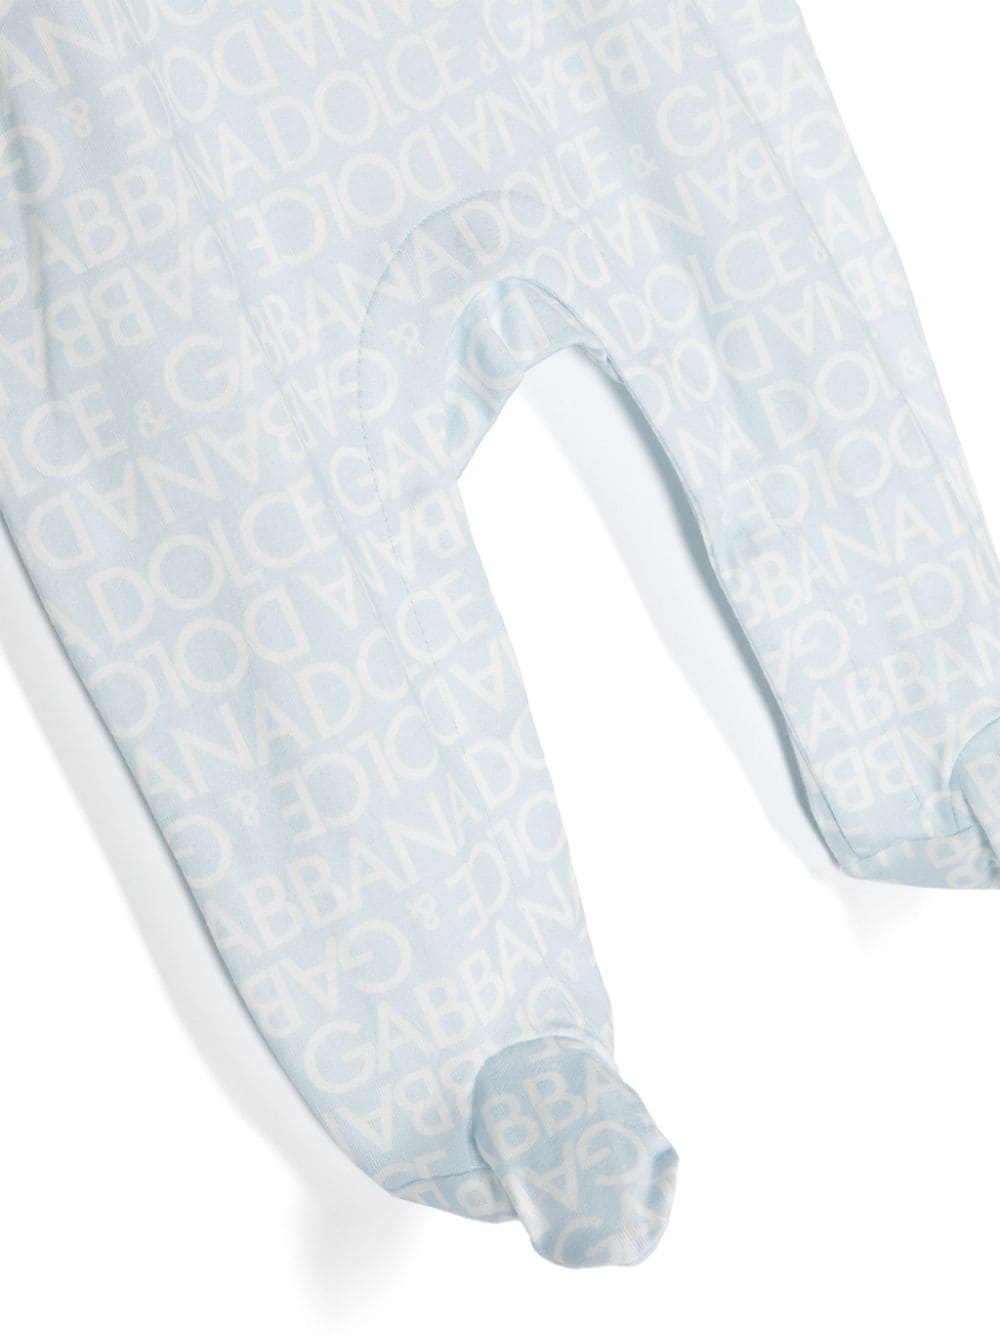 Light blue and white pajamas for newborns